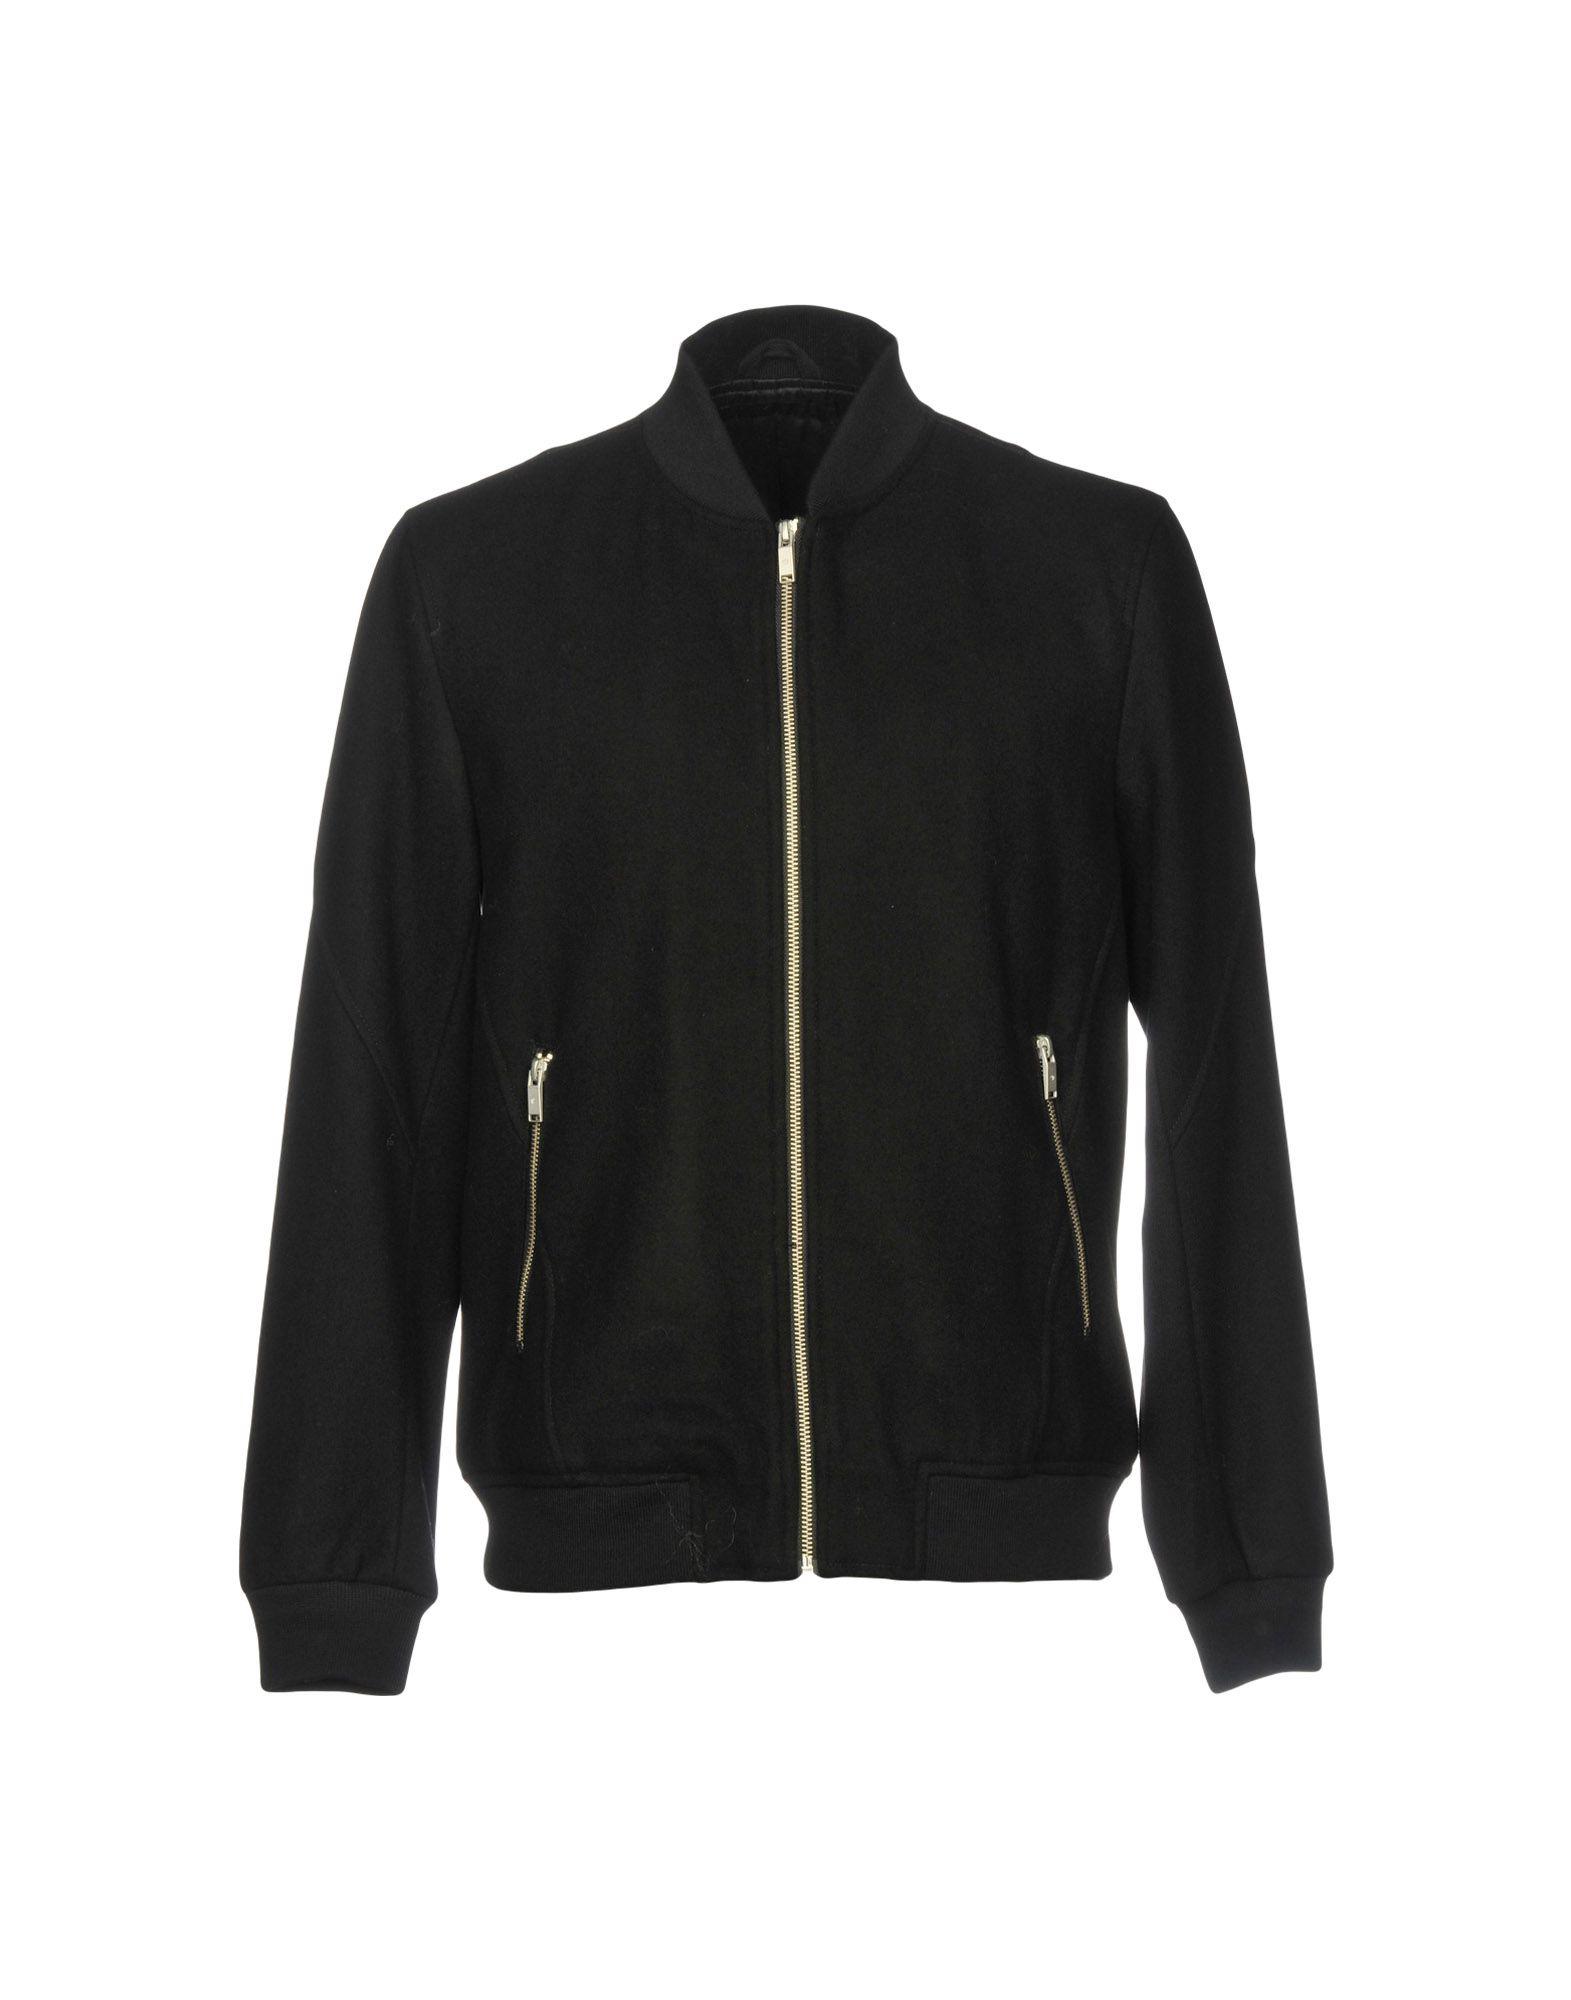 Junk De Luxe Flannel Jacket in Black for Men - Lyst